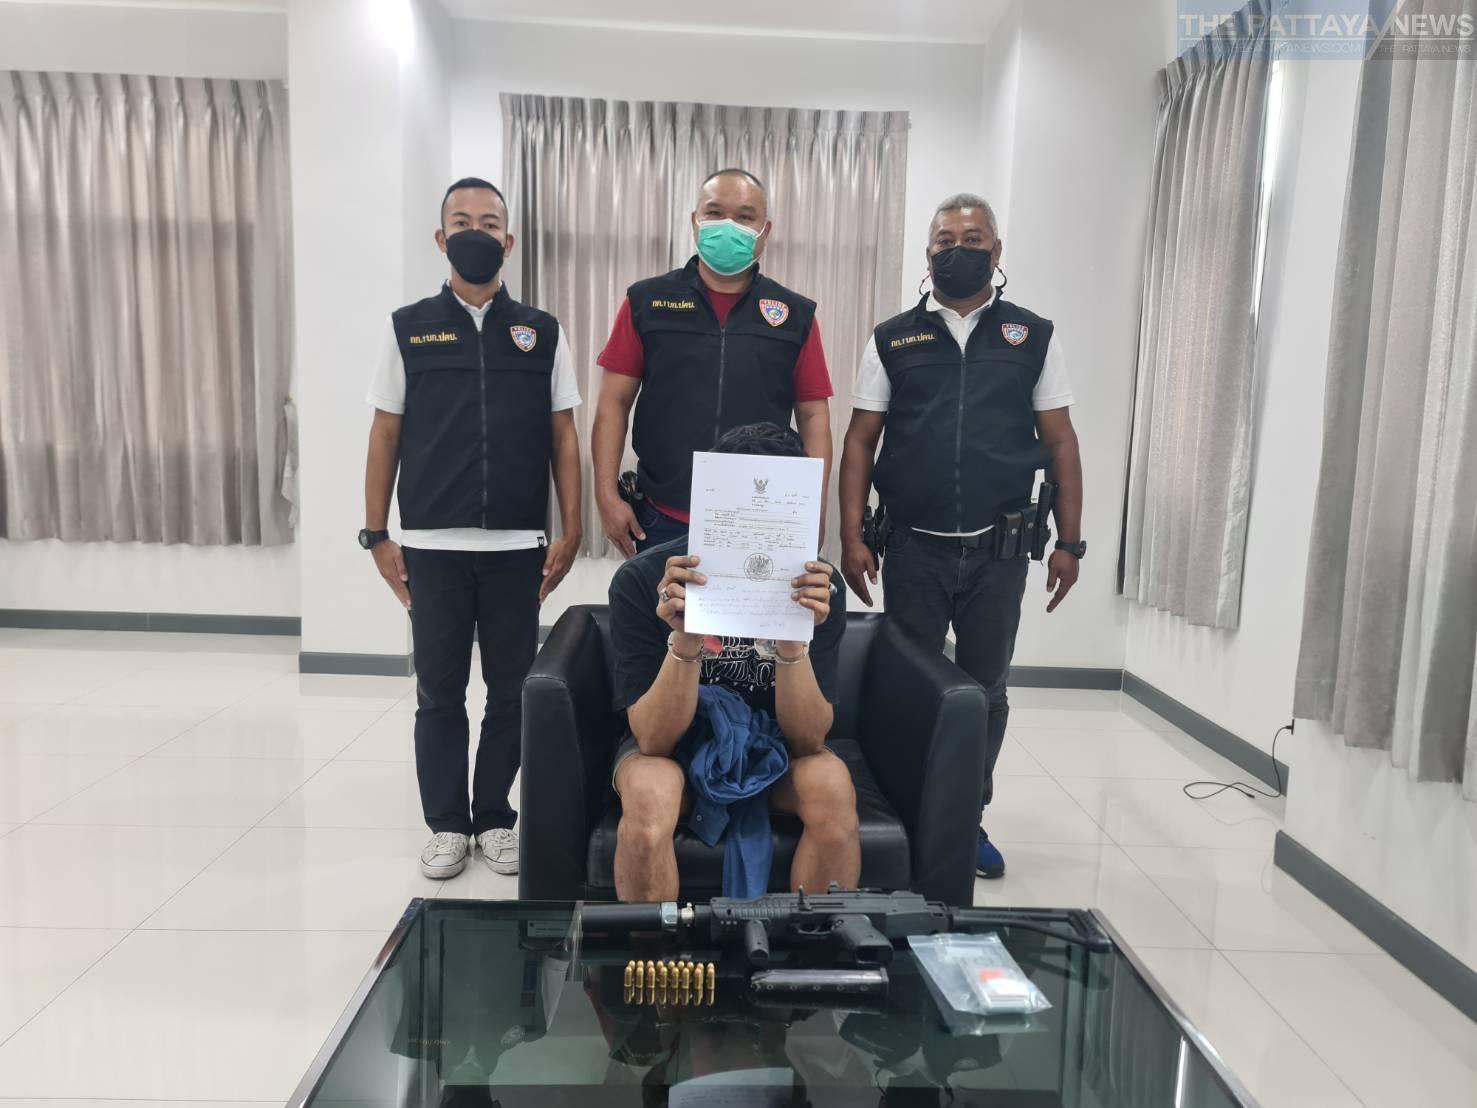 Alleged Thai drug dealer arrested in Nonthaburi after escaping arrest for illegal drug charges in Chomphon